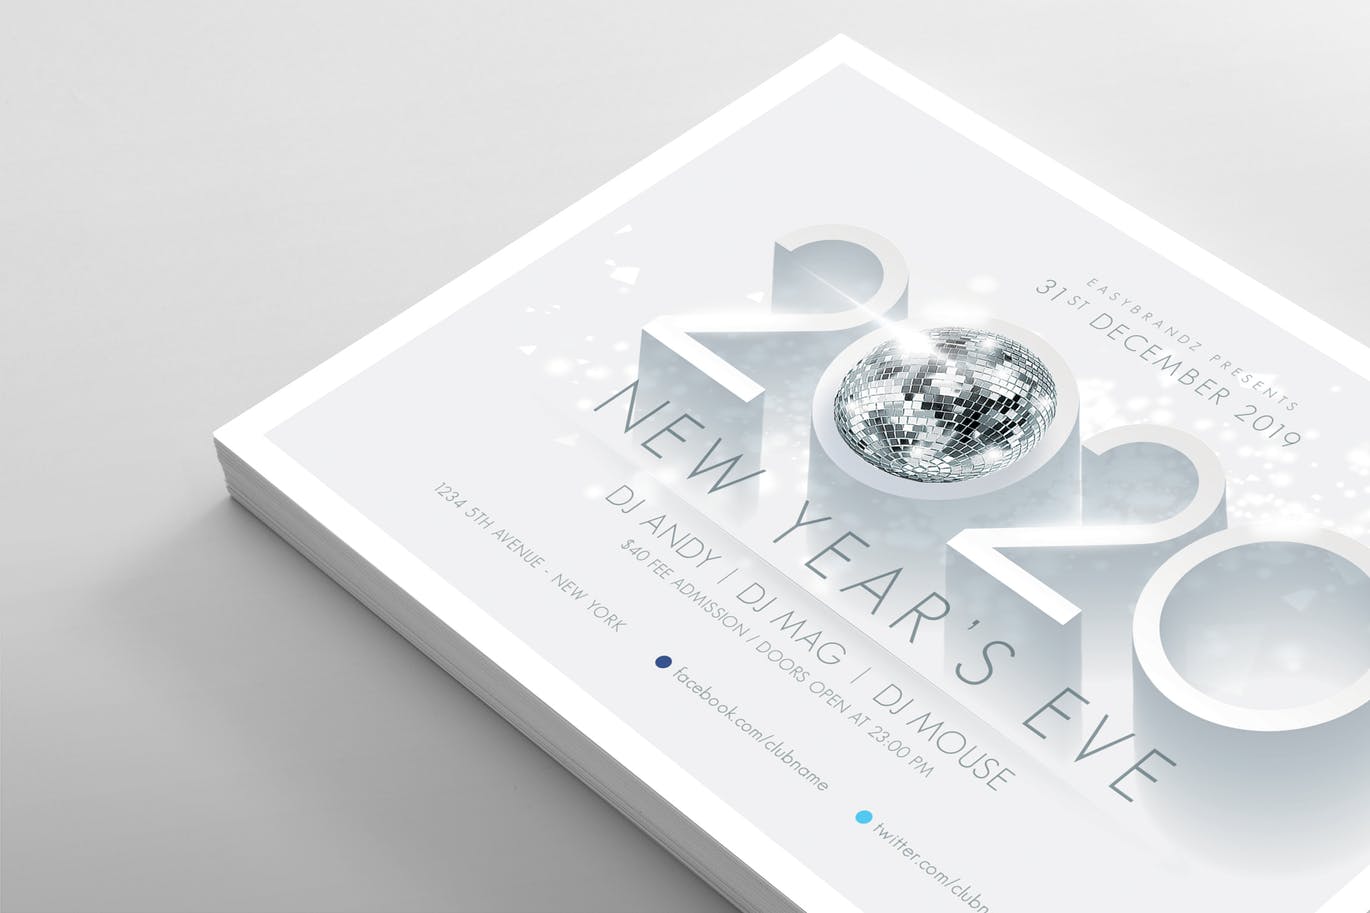 简约长阴影设计风格2020新年主题横版传单设计模板 2020 New Years Flyer Template插图